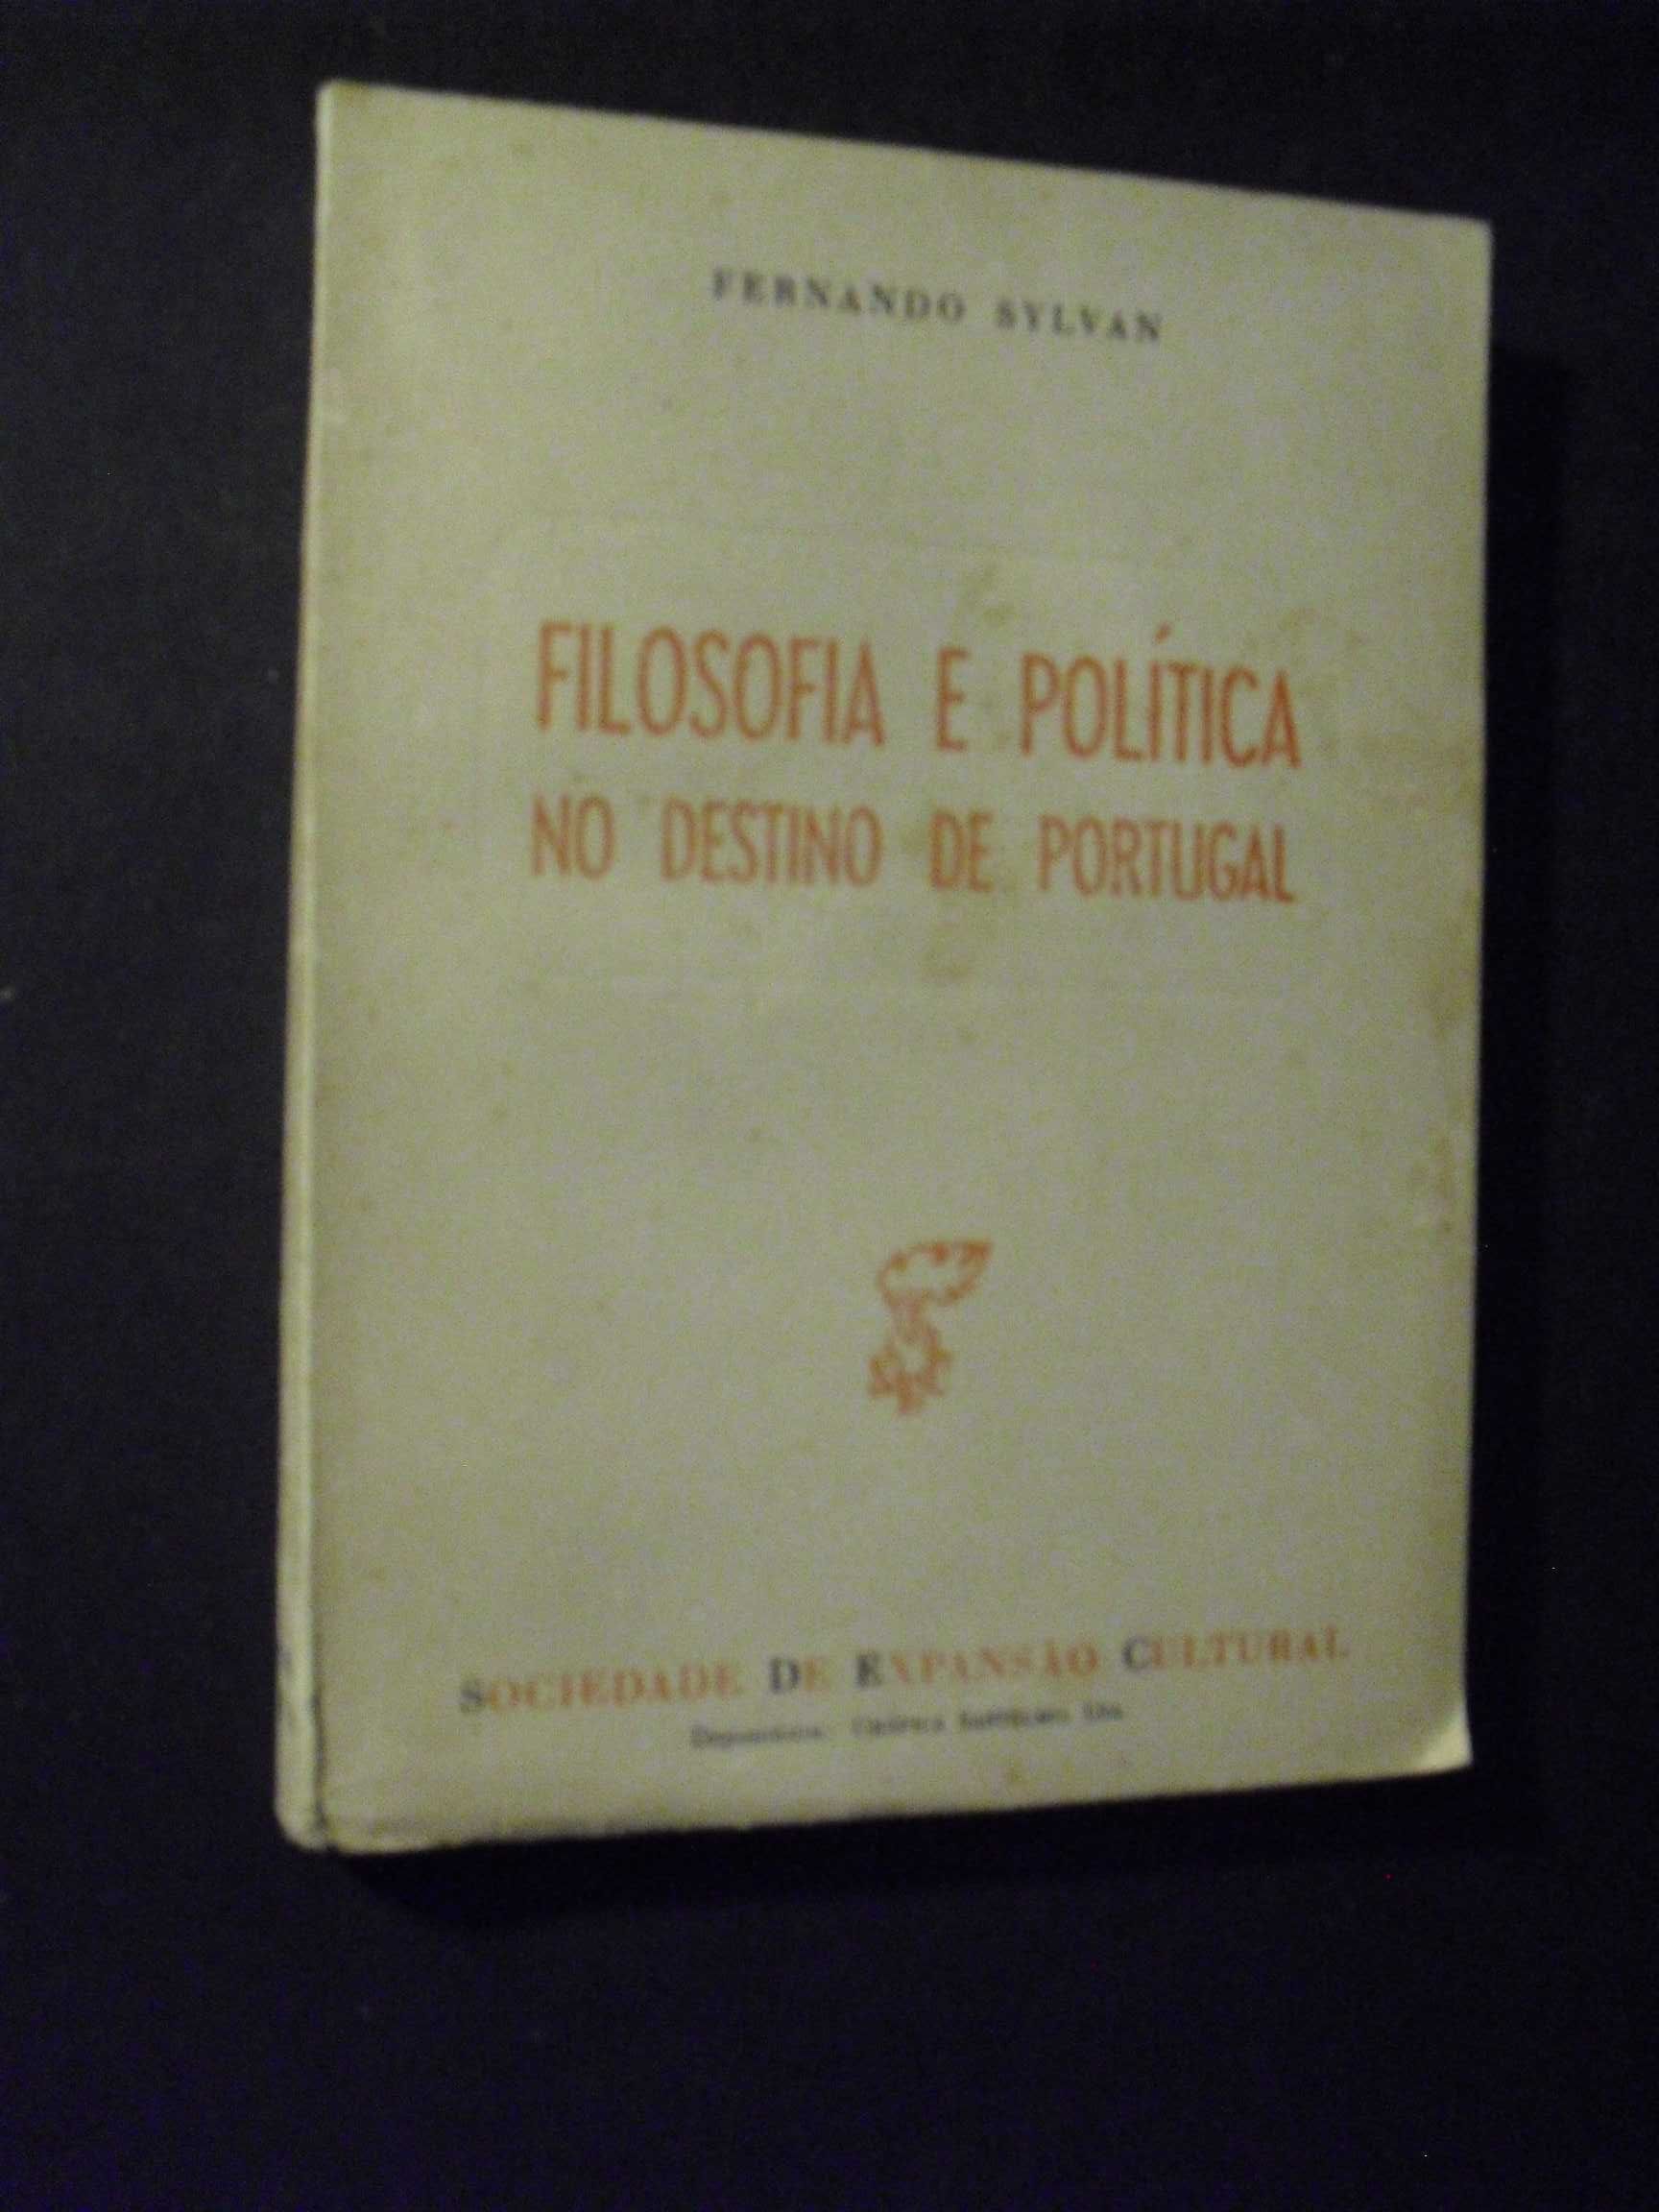 Sylvan (Fernando);Filosofia e Politica no Destino de Portugal